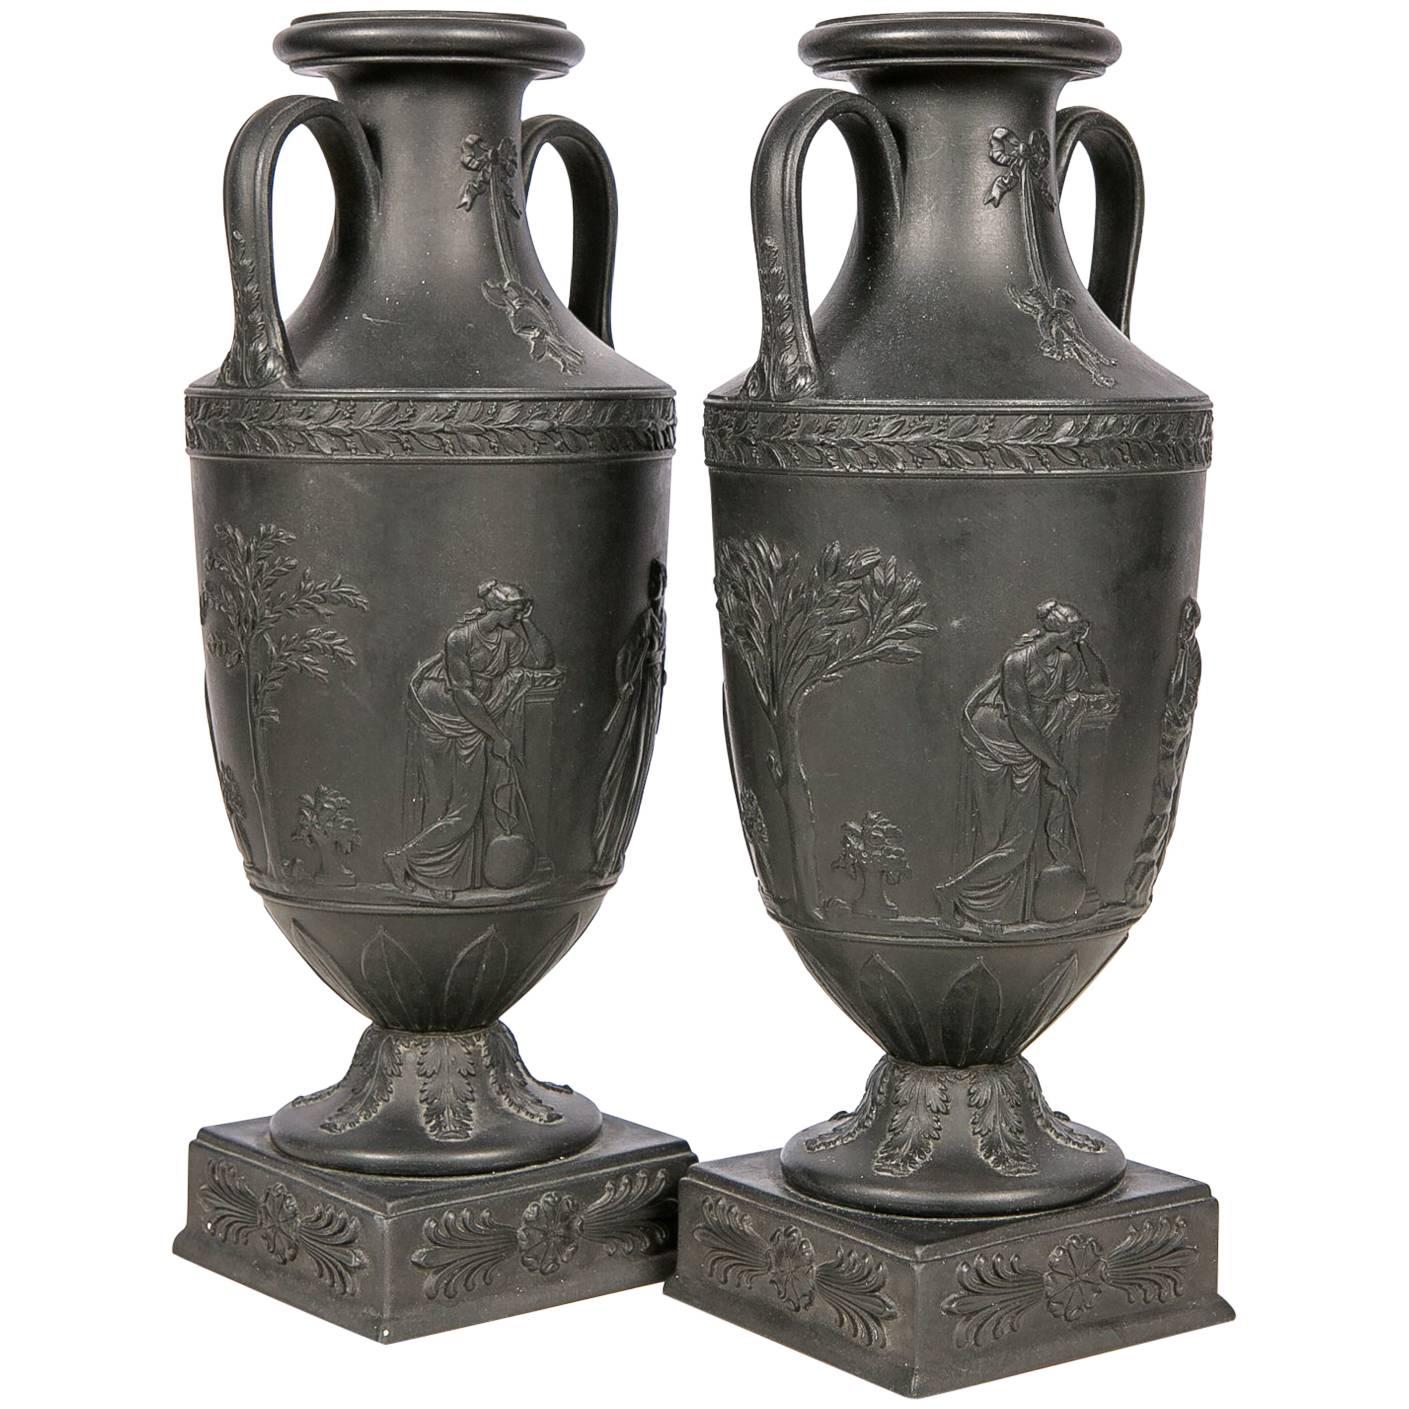  Wedgwood Black Basalt Mantle Vases, Pair